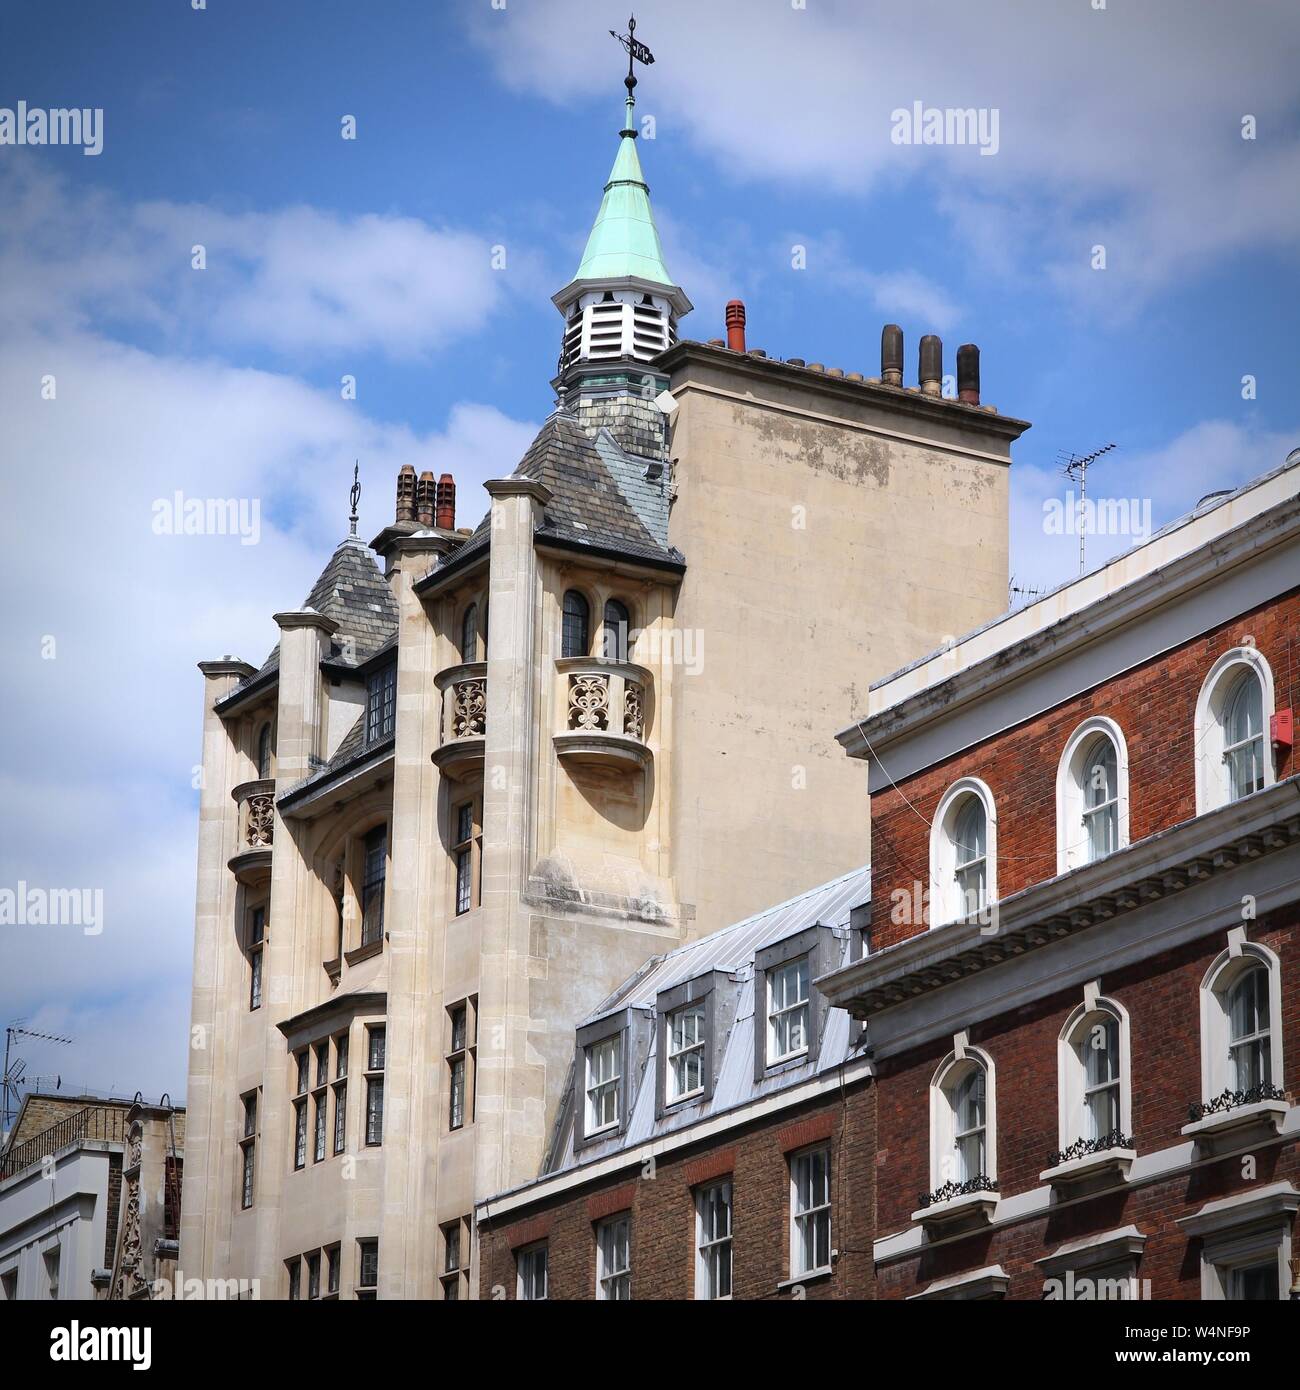 London, United Kingdom - English l'architecture résidentielle. La composition carrée. Banque D'Images